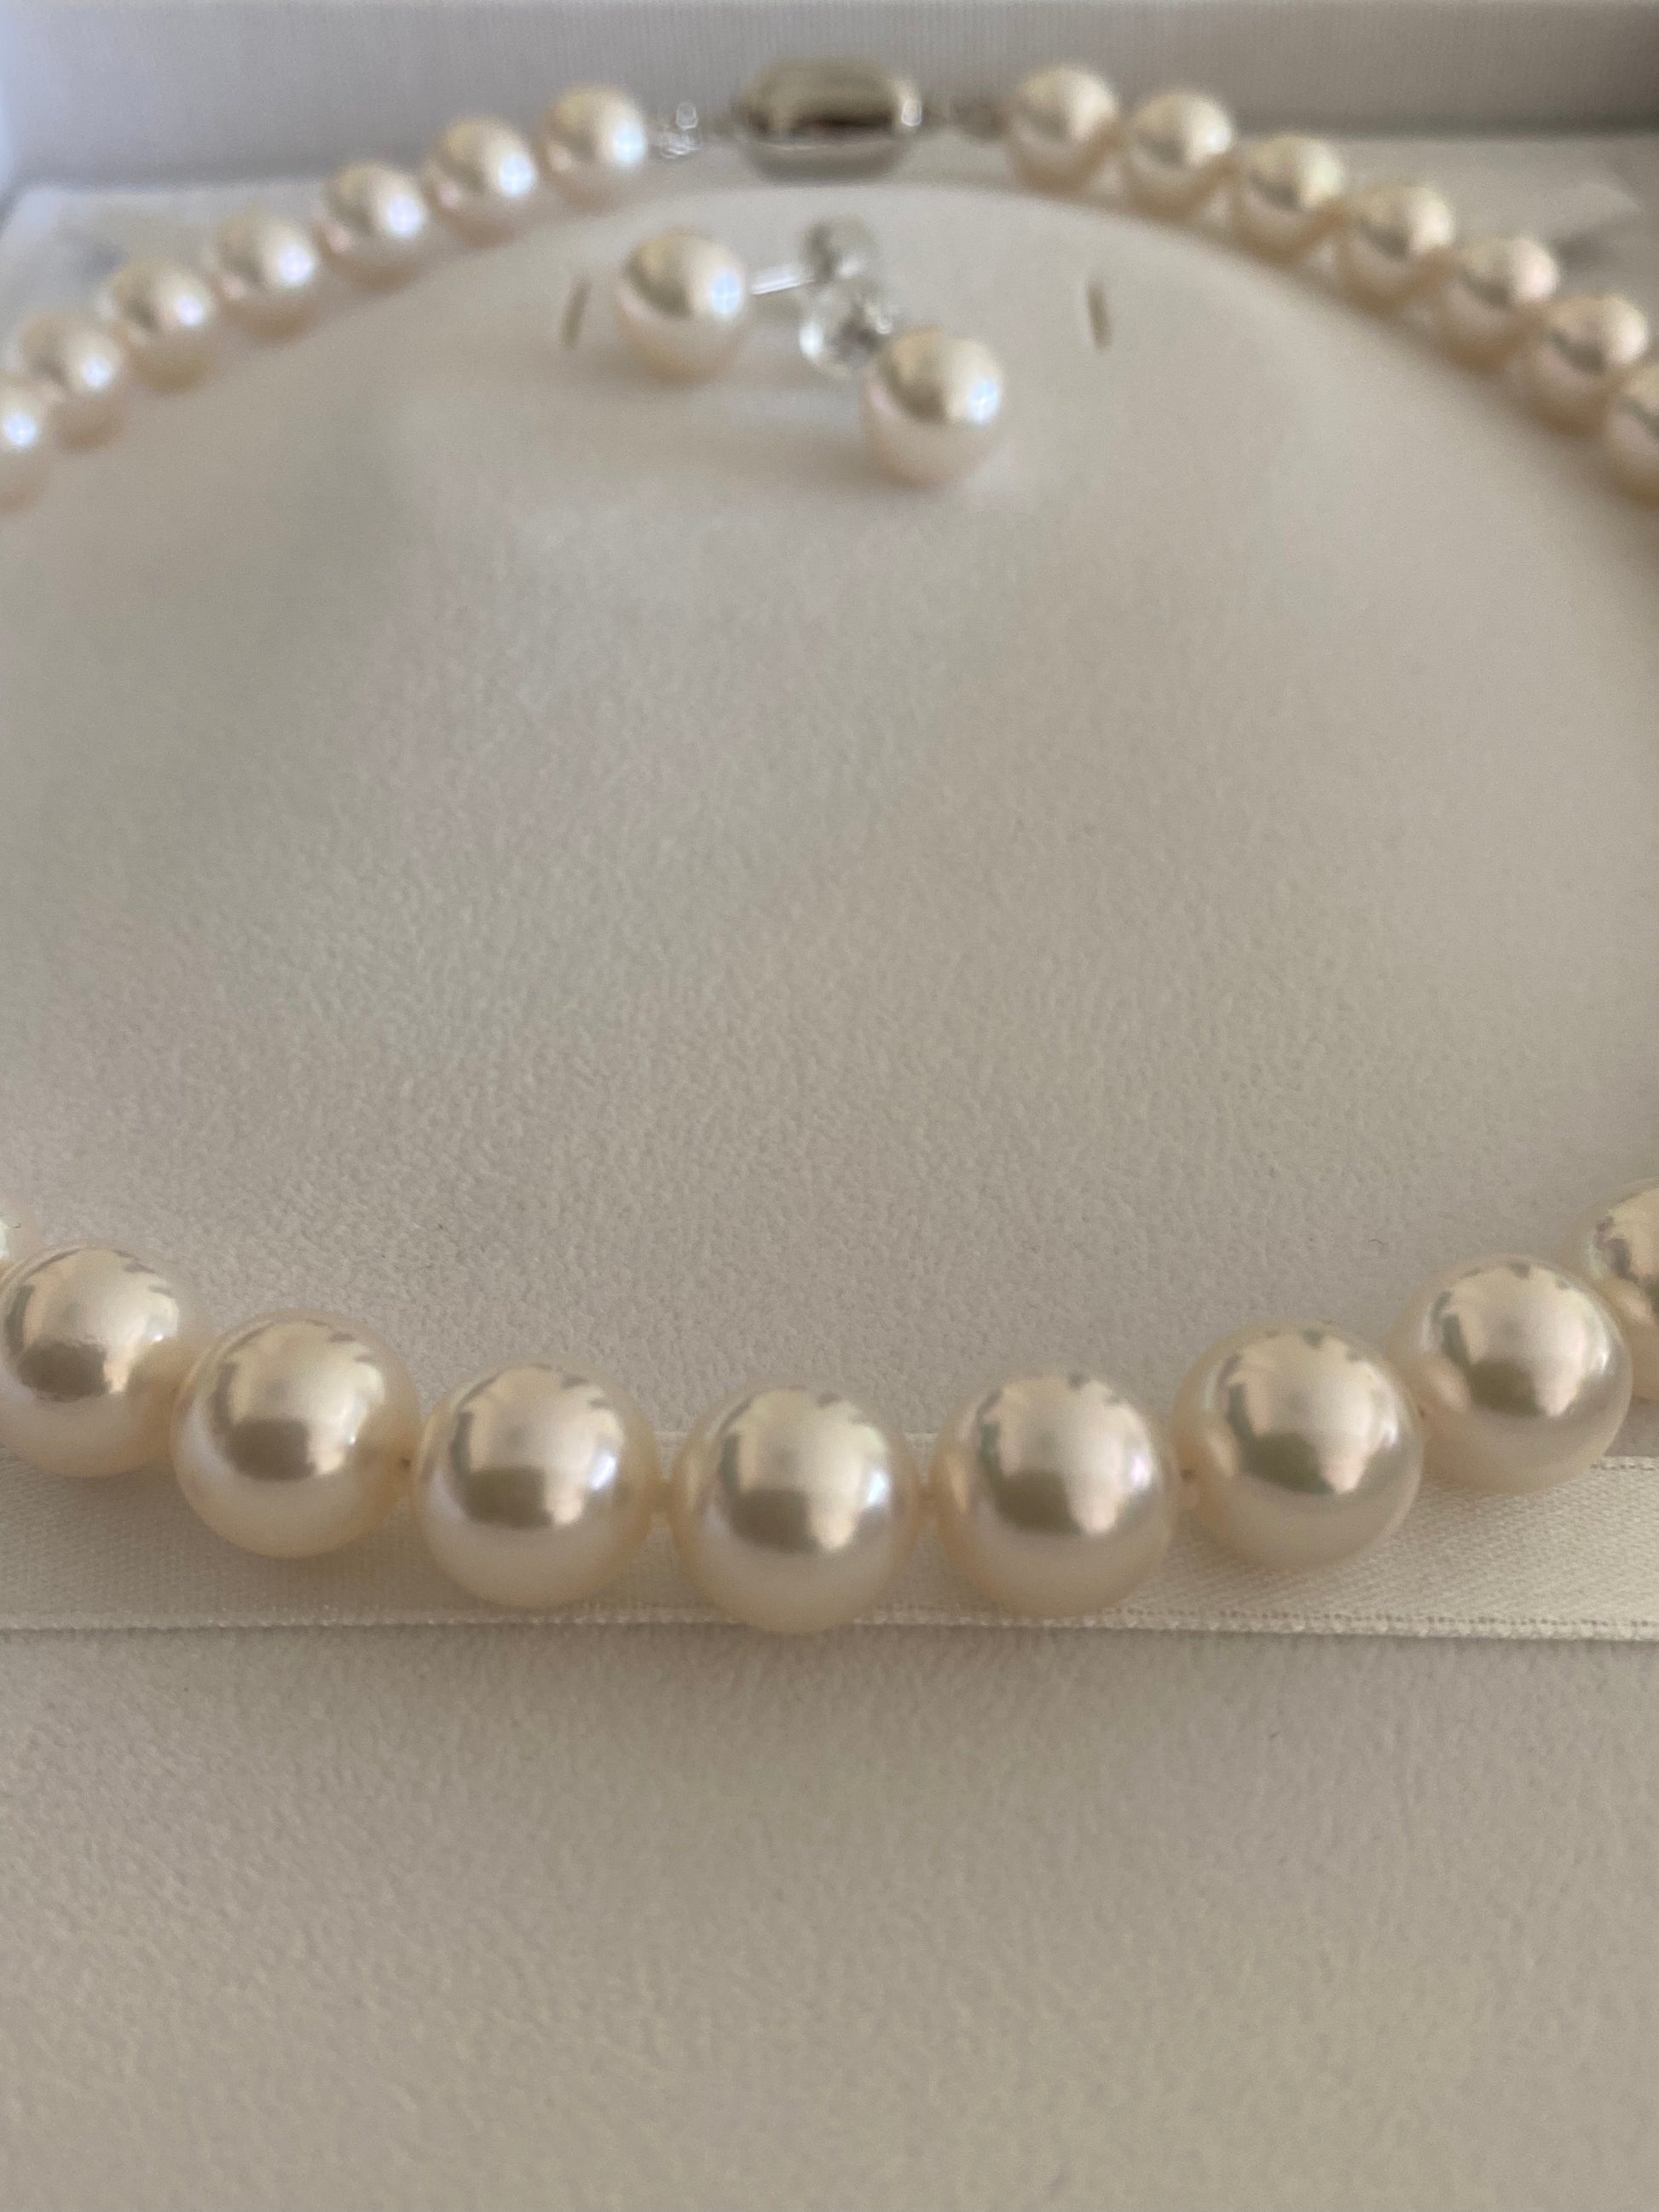 レディース鑑別書付きアコヤ真珠ネックレスセット 8.5〜9.0ミリ 高品質パール 日本産